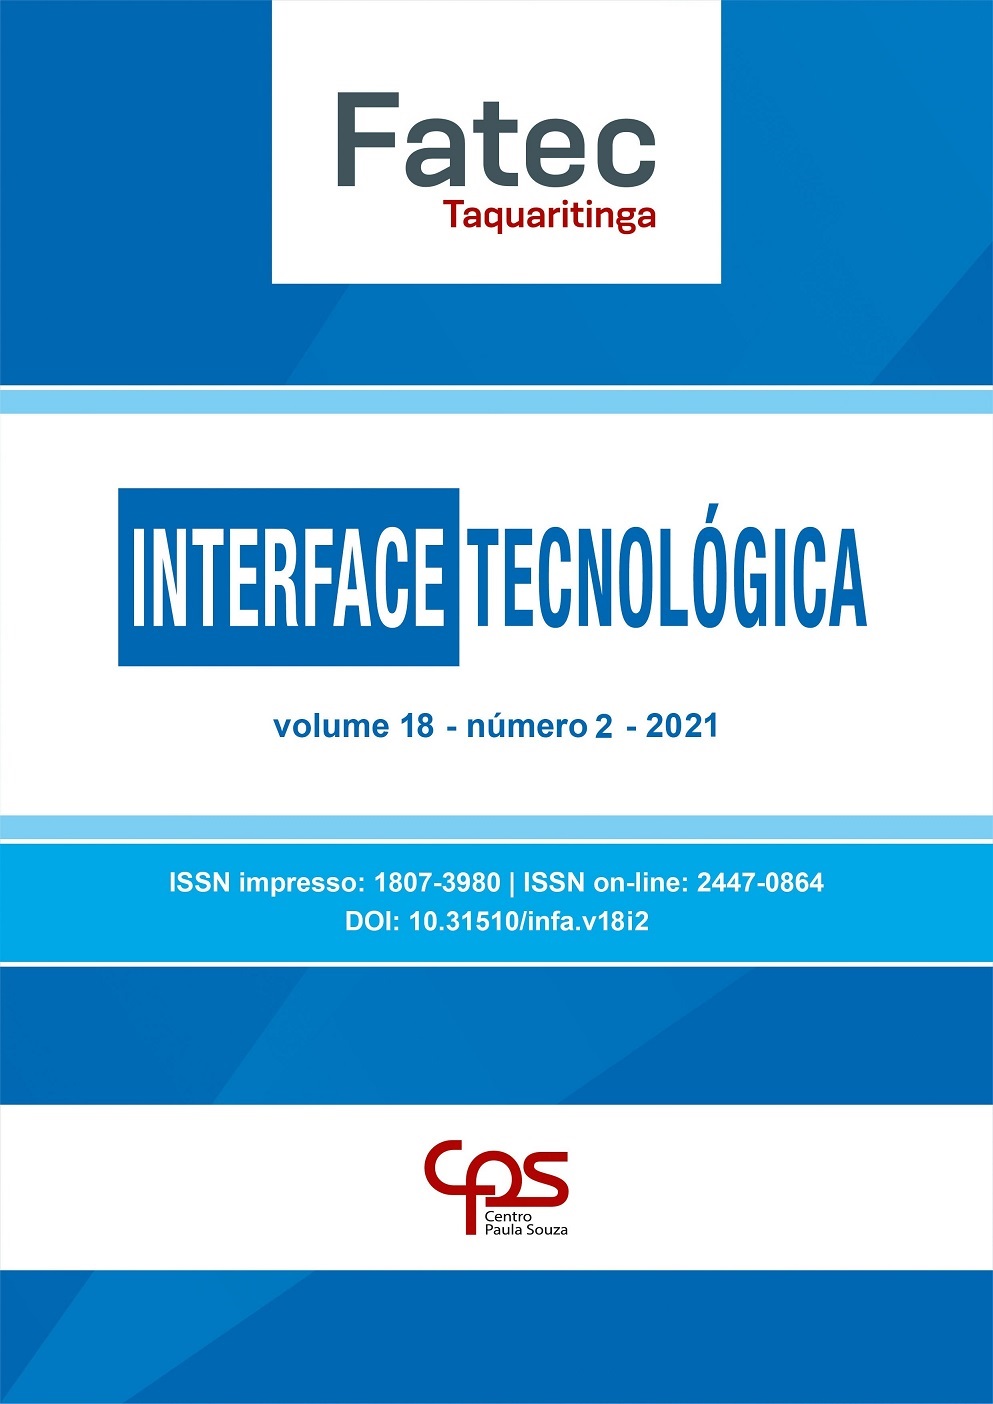 					Visualizar v. 18 n. 2 (2021): Revista Interface Tecnológica
				